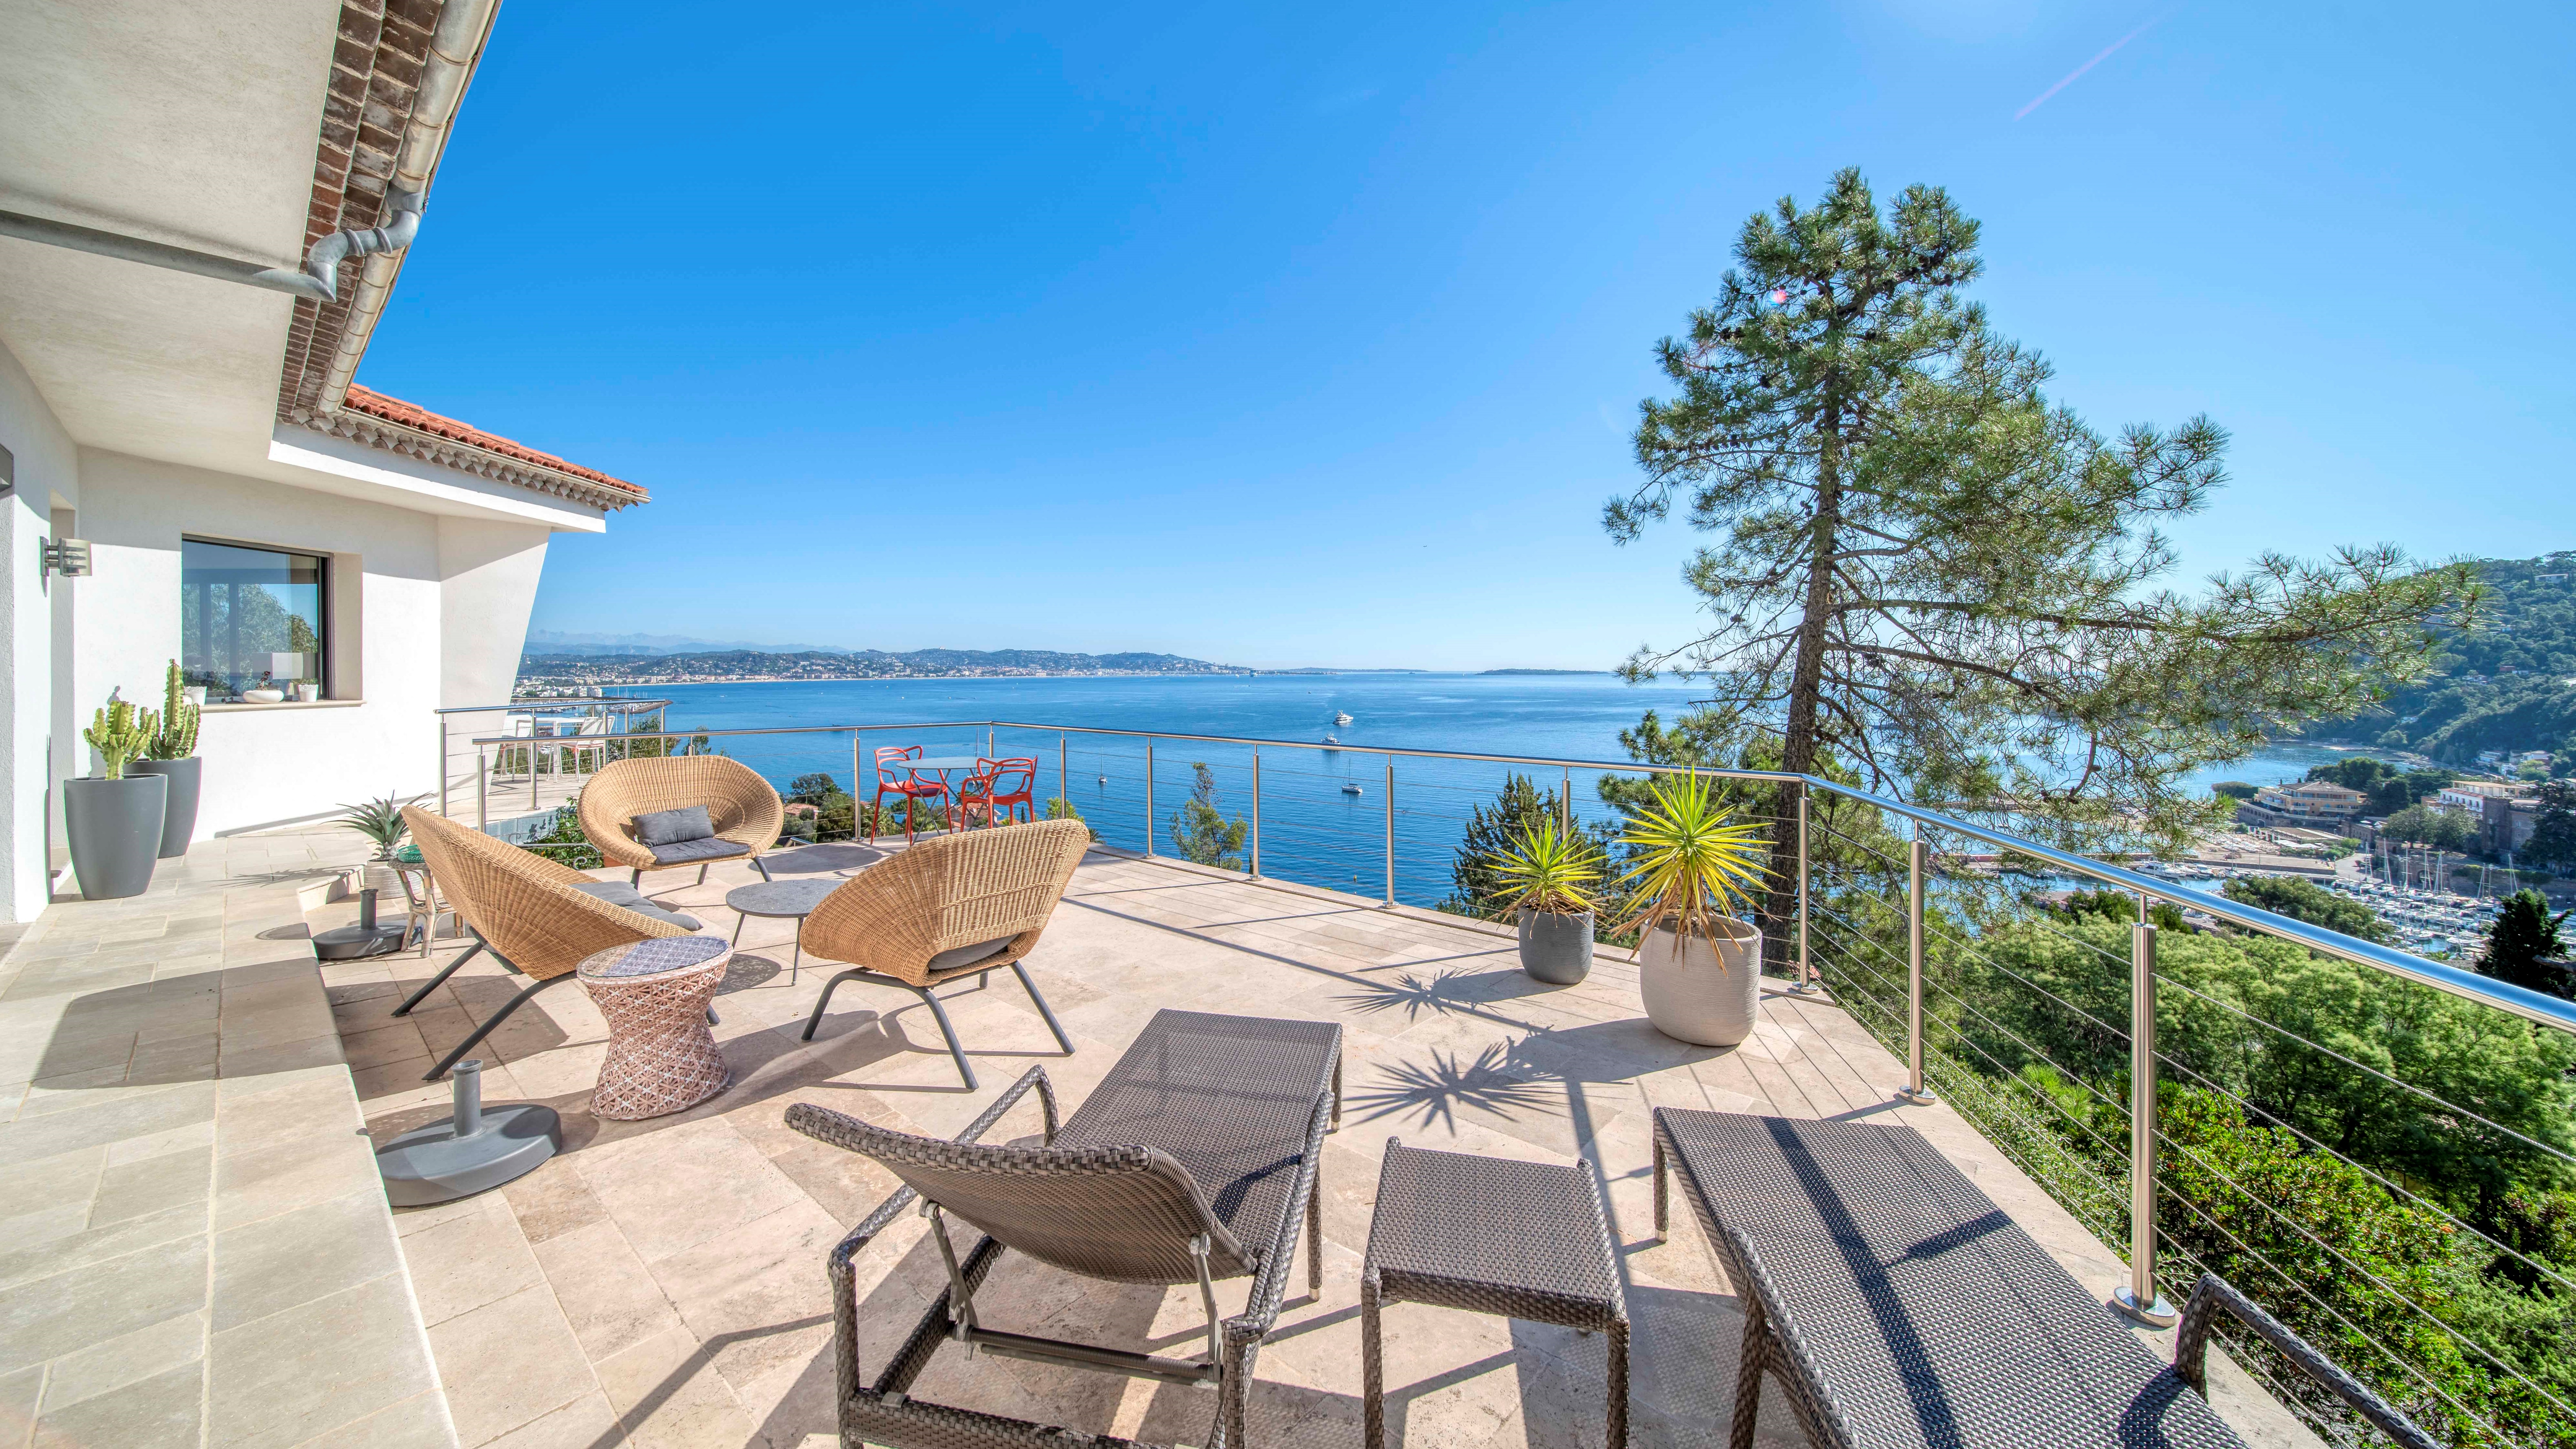 Immobilier de luxe. L'Agence Europa vous propose une luxueuse villa vue mer à Super Cannes - Côte d'Azur